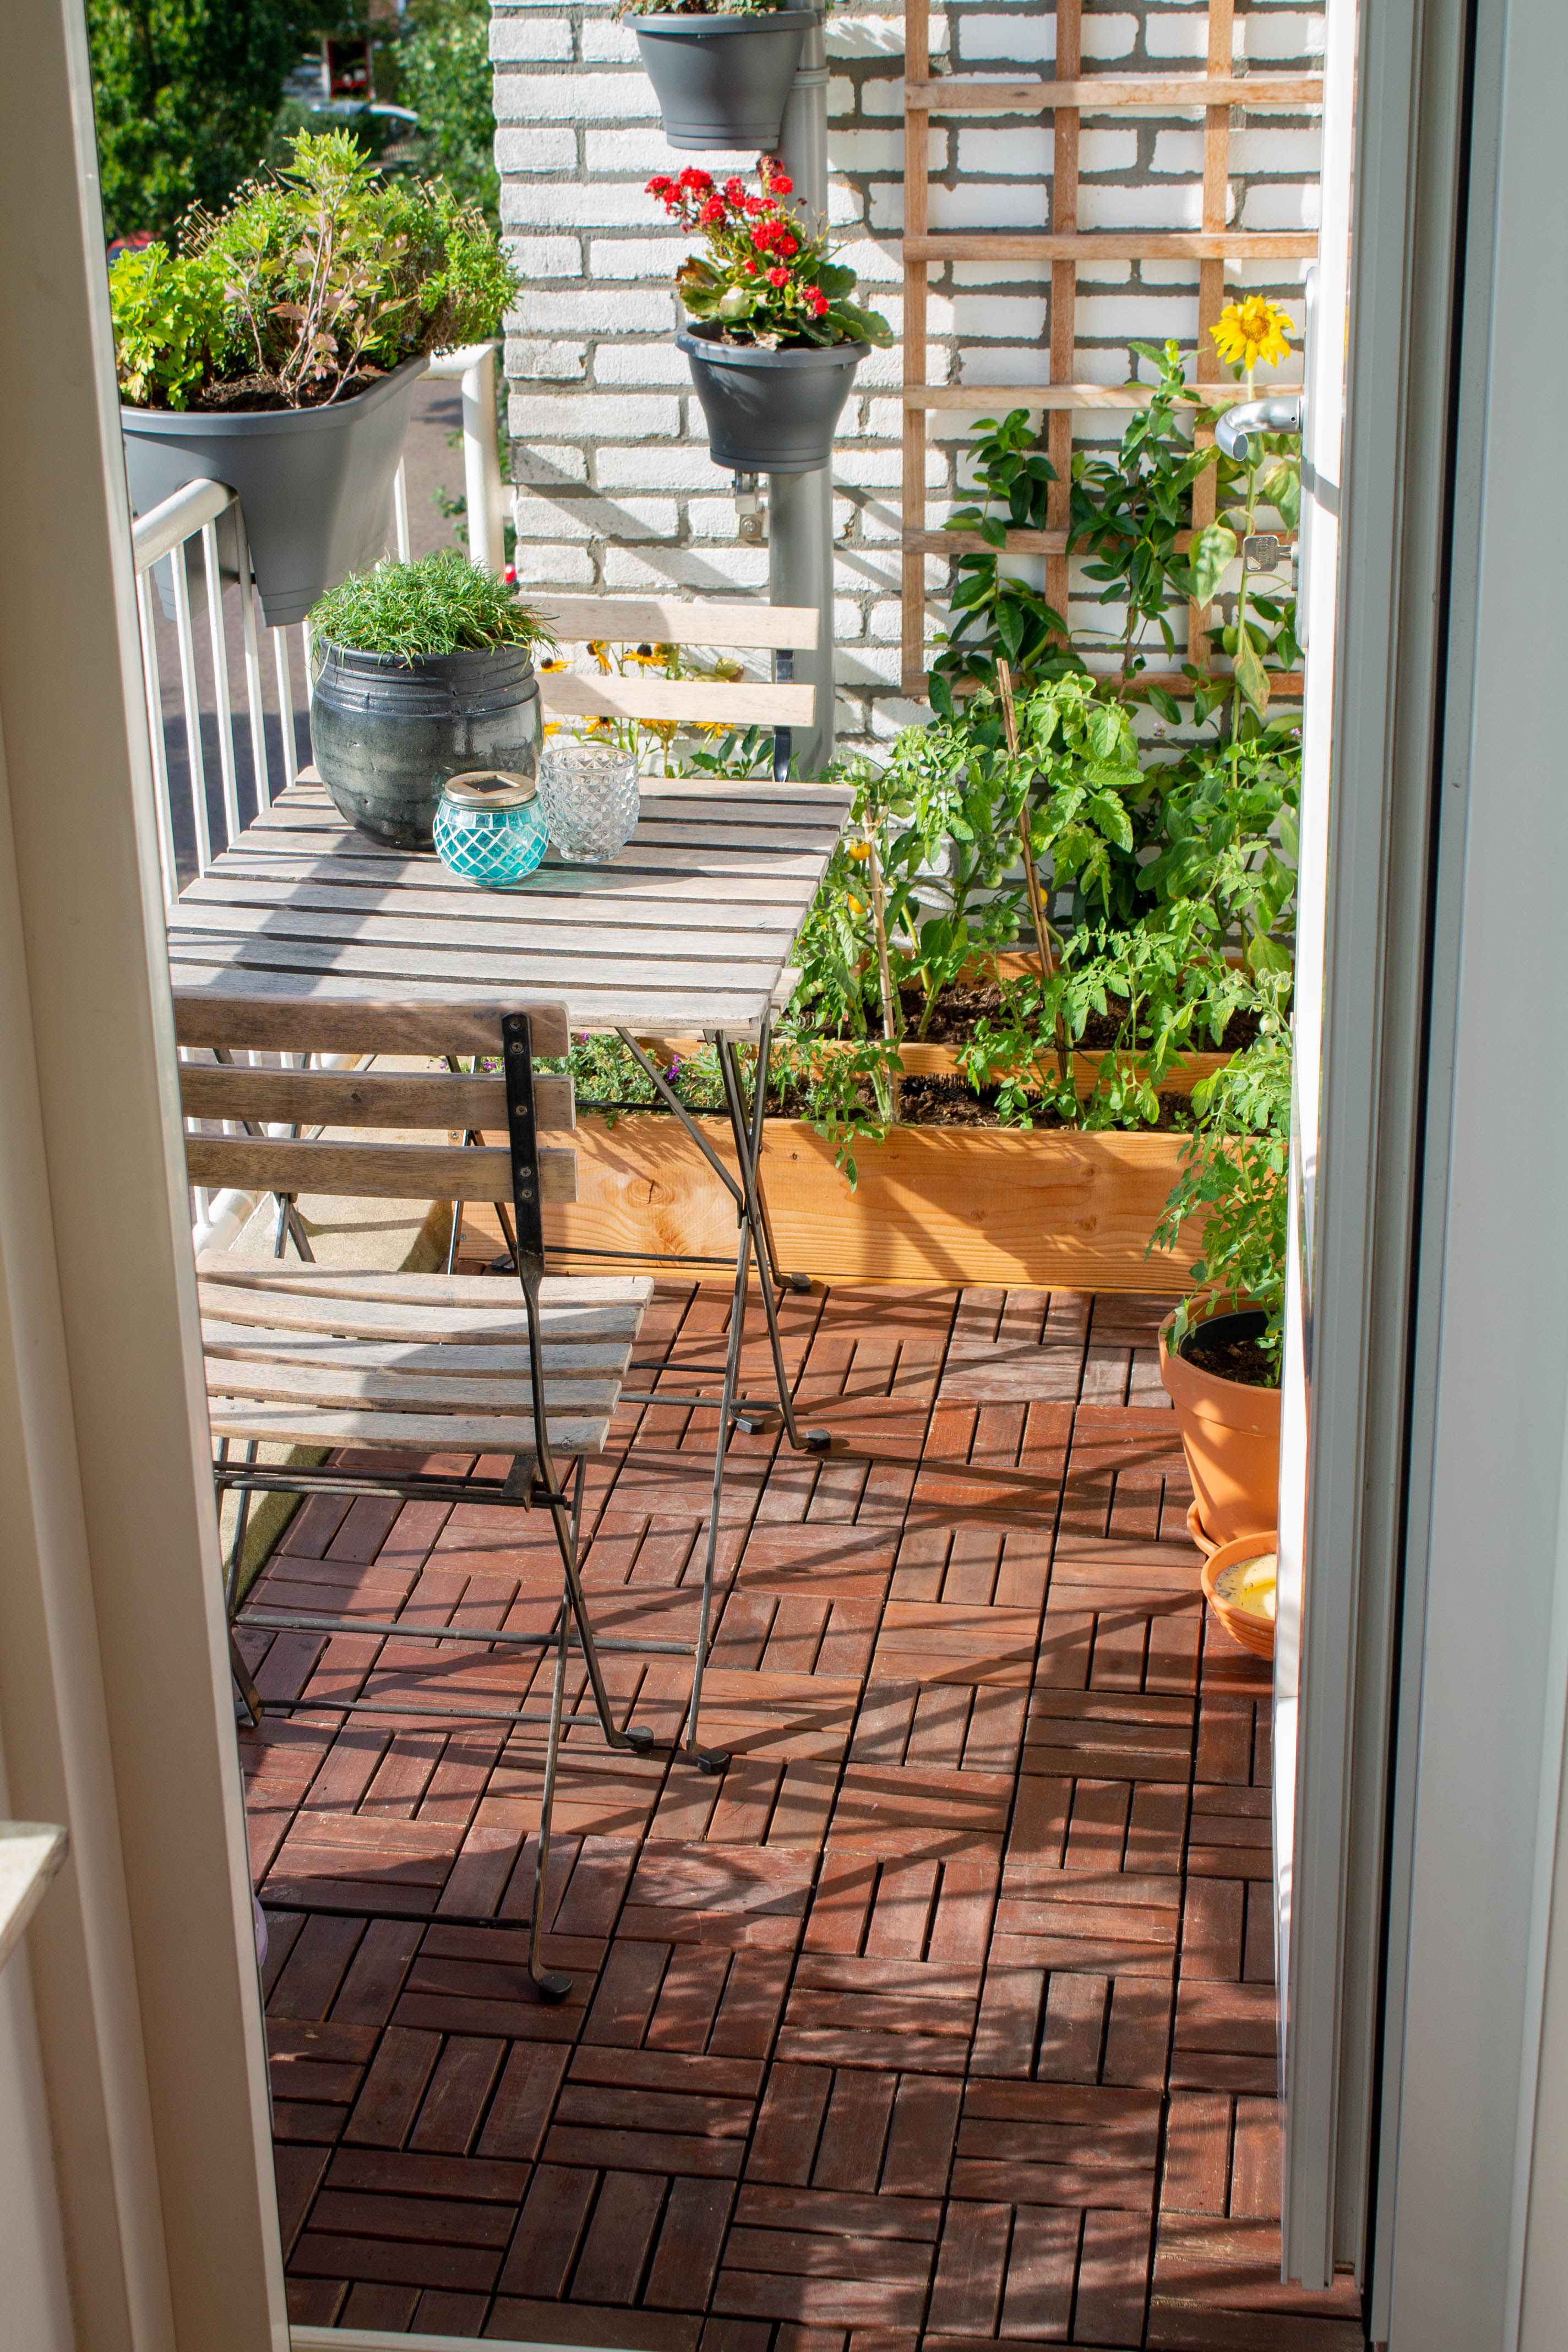 Zegenen Pluche pop Rechtsaf Ook op een balkon kun je tuinieren: mijn 9 tips - Plantleven